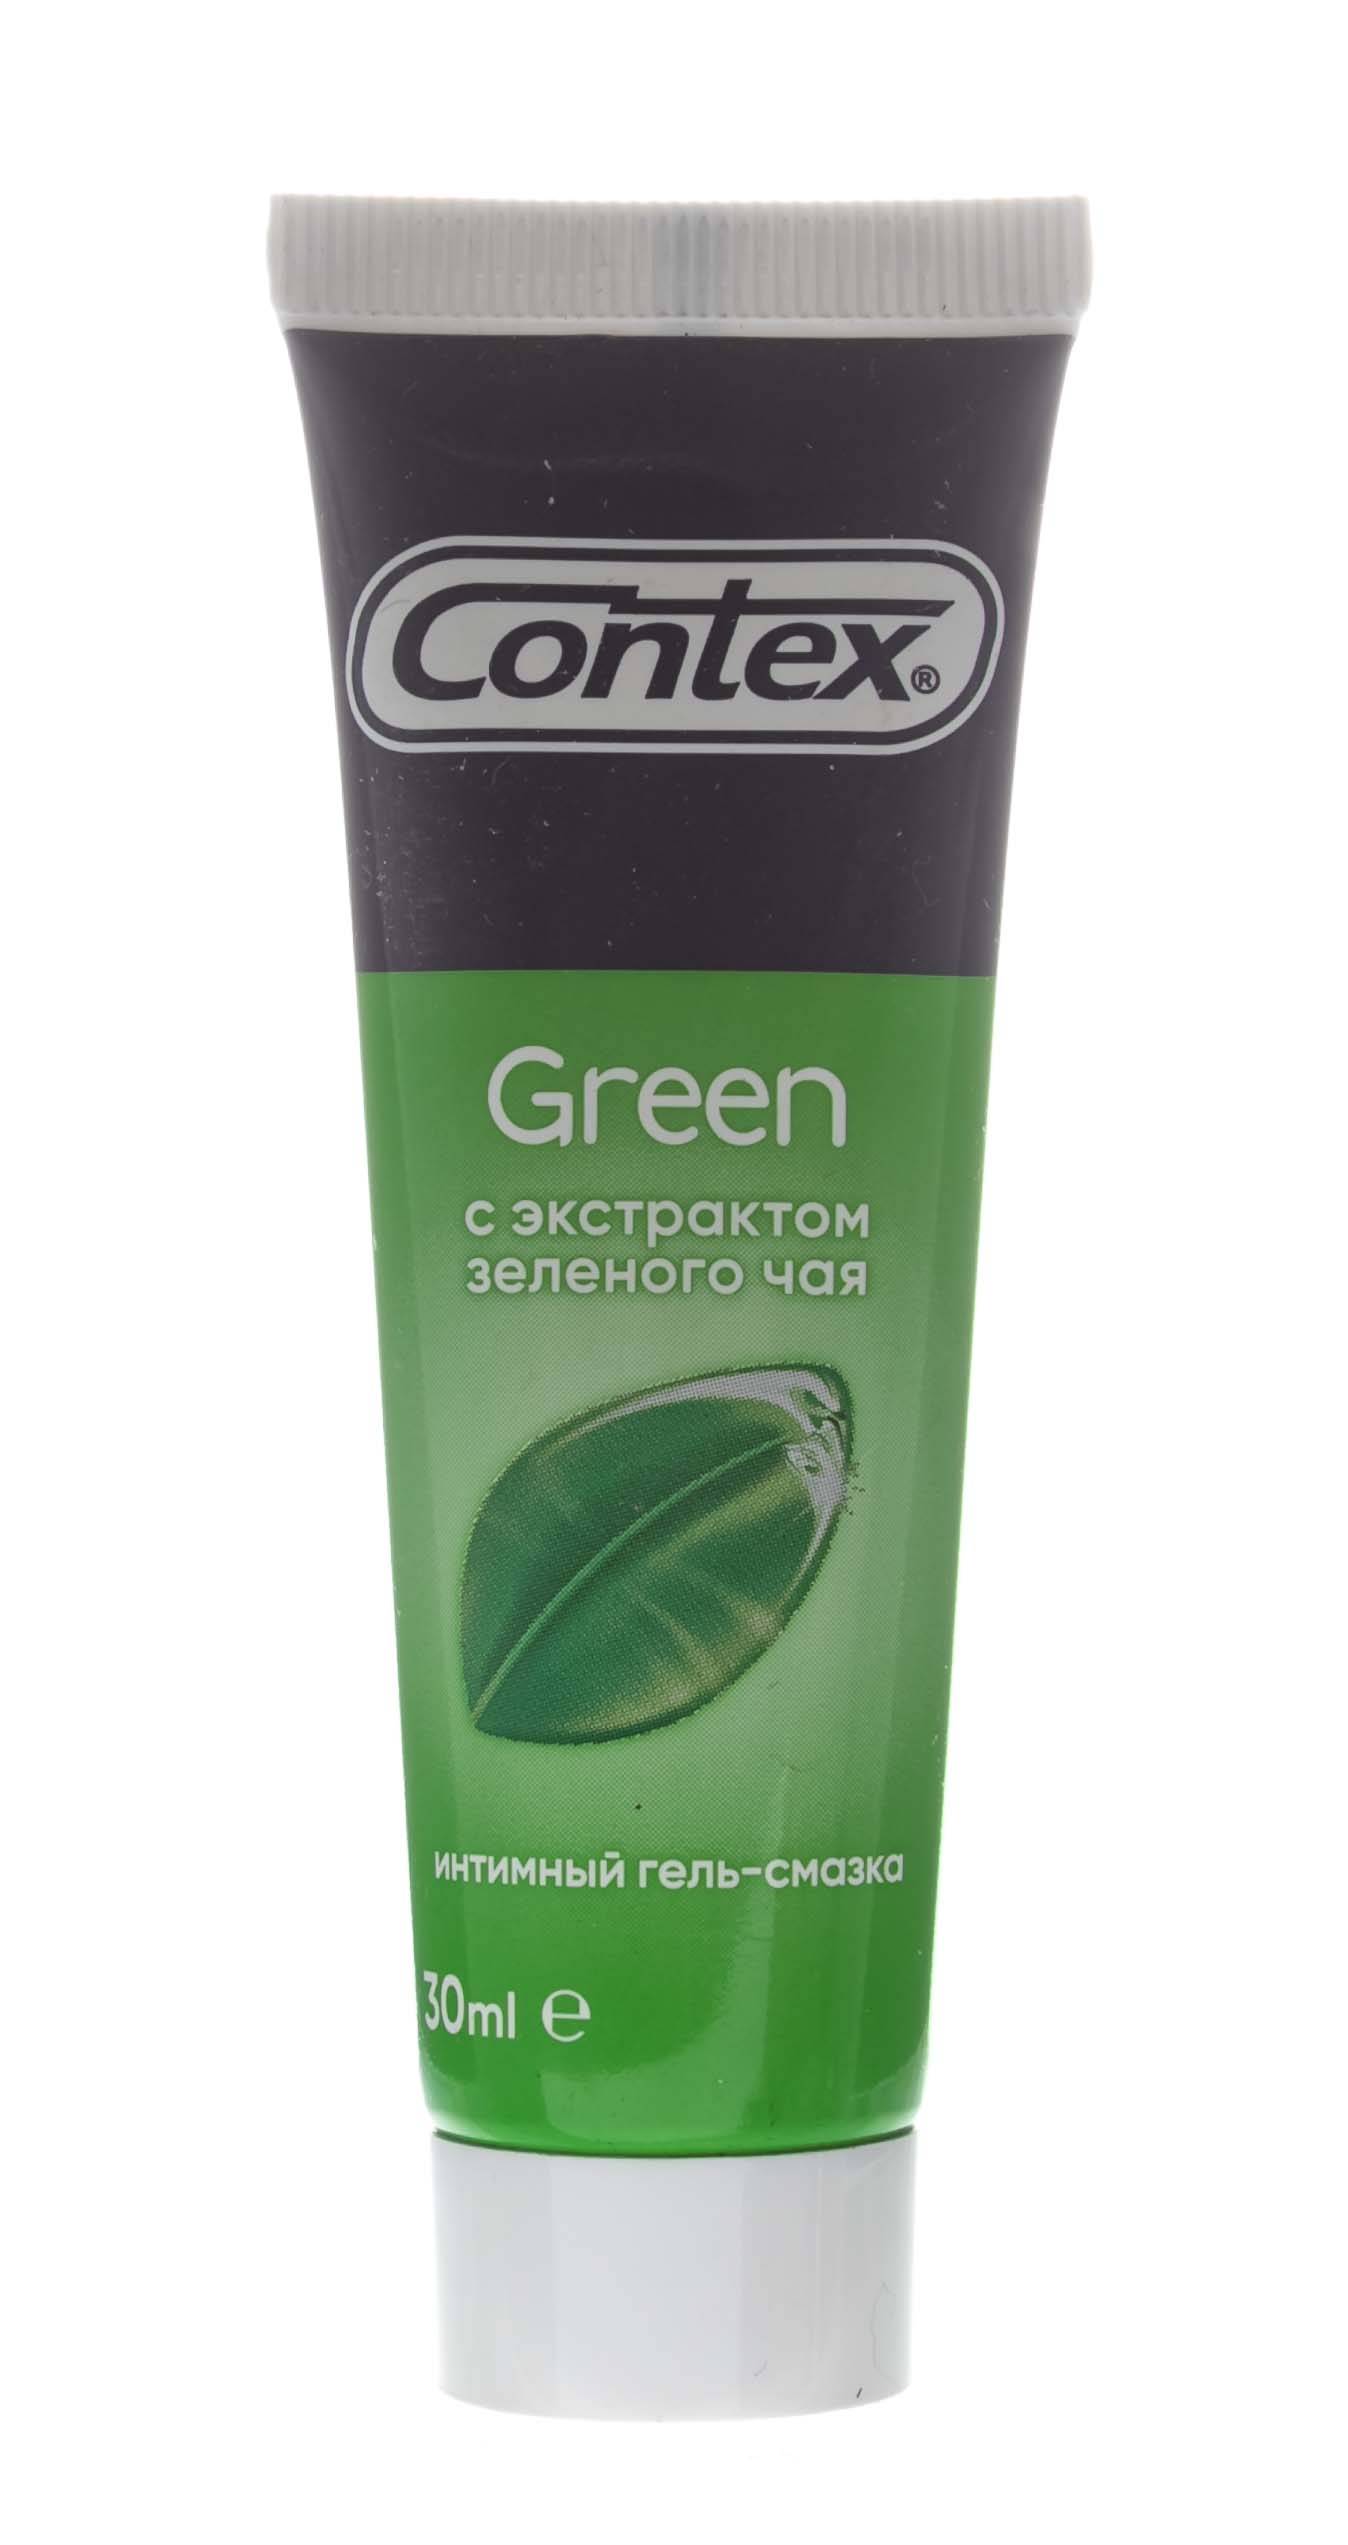 Contex Гель-смазка Green, 30 мл (Contex, Гель-смазка) гель смазка contex green с экстрактом зеленого чая 30 мл зеленый чай